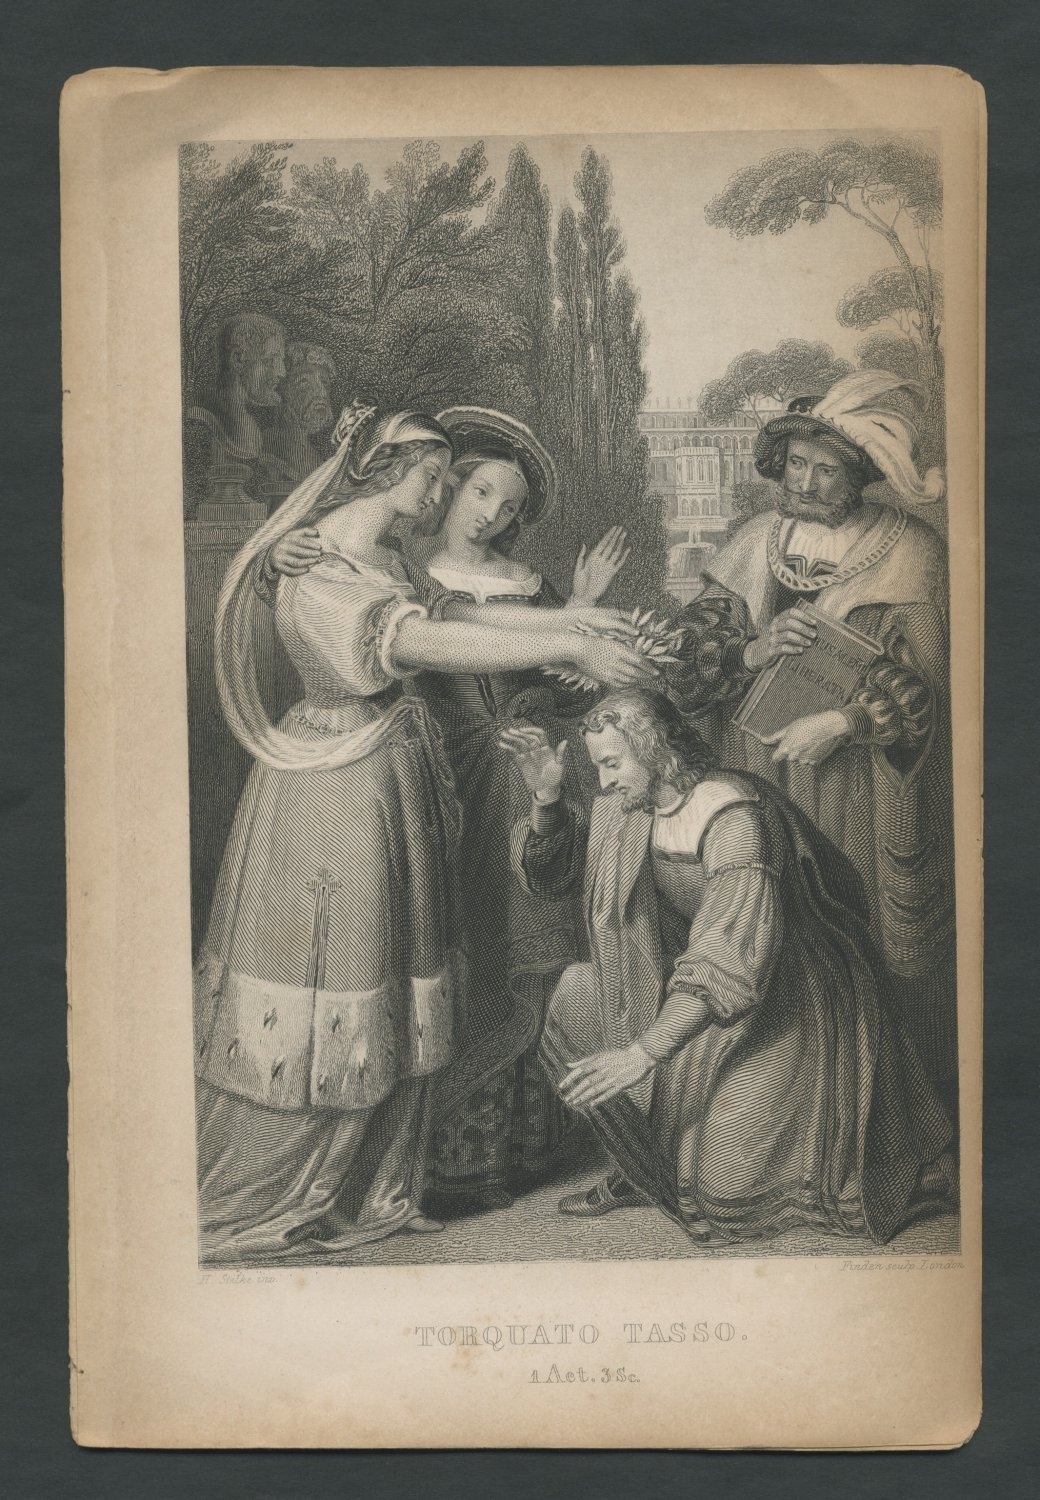 &quot;Torquato Tasso. 1 Act. 3 Sc.&quot; Tasso wird von den Frauen bekränzt (Freies Deutsches Hochstift / Frankfurter Goethe-Museum CC BY-NC-SA)